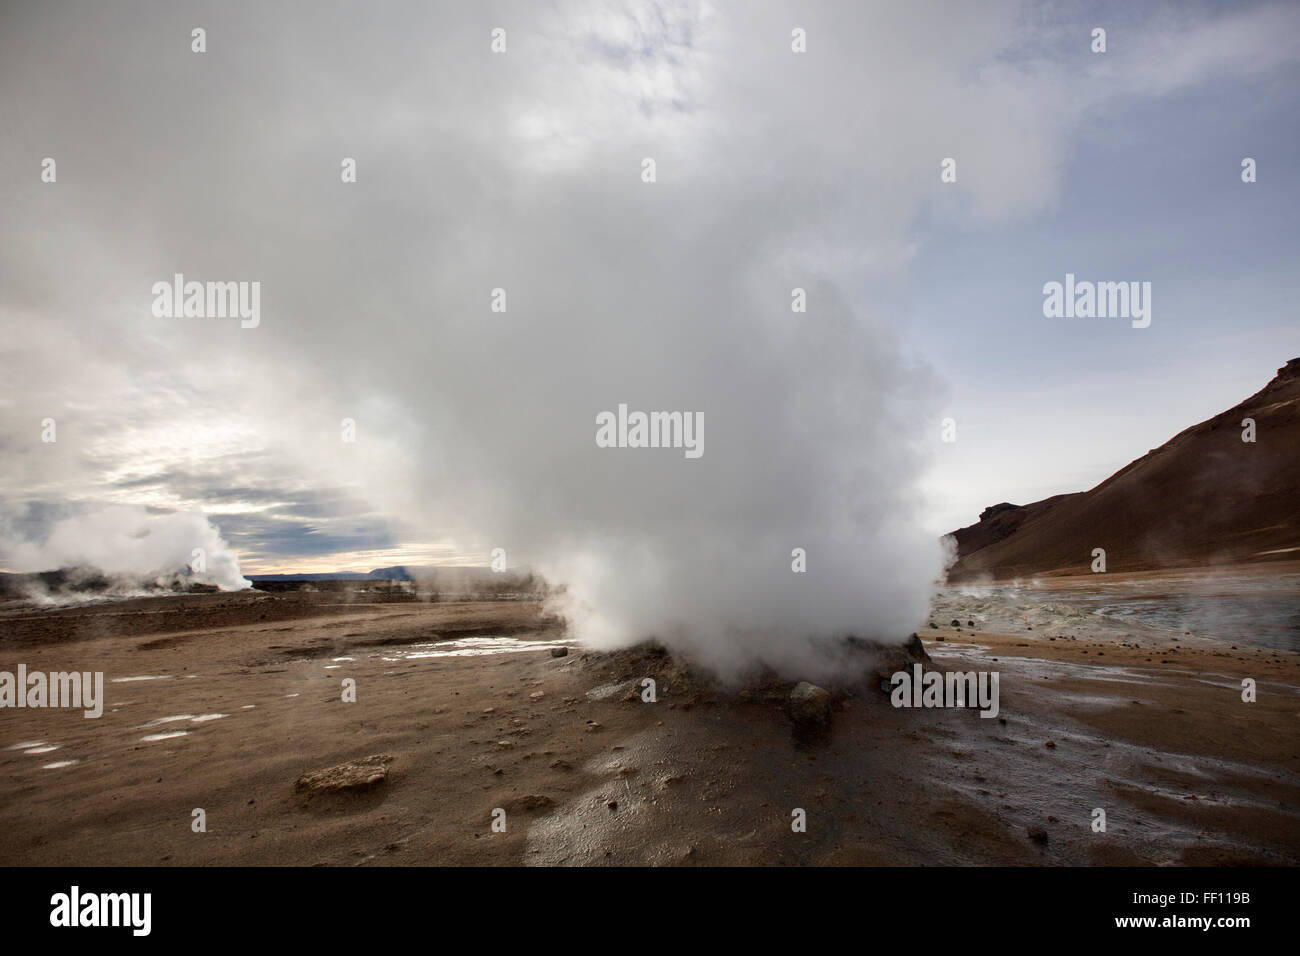 Geyser steam in remote field Stock Photo